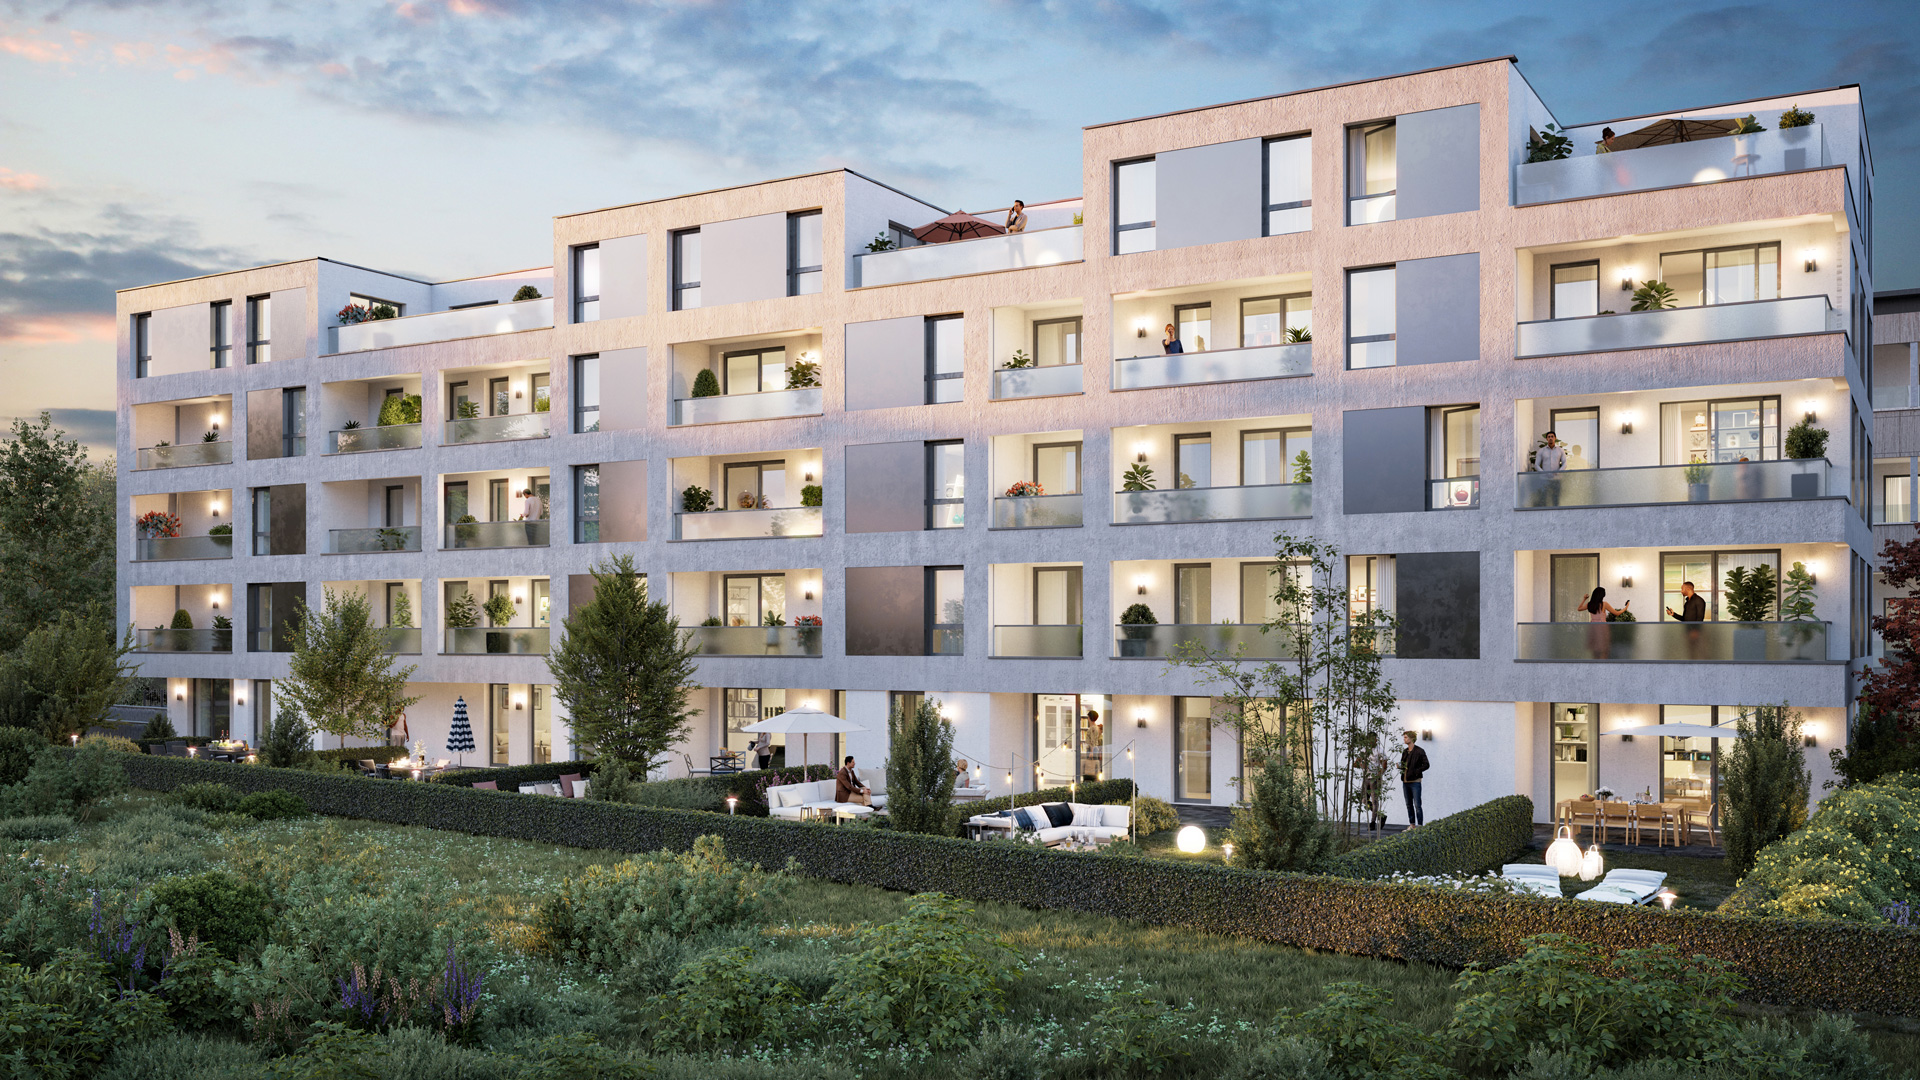 41 Marne programme immobilier neuf avenue de la Marne à Tourcoing - Loger Habitat